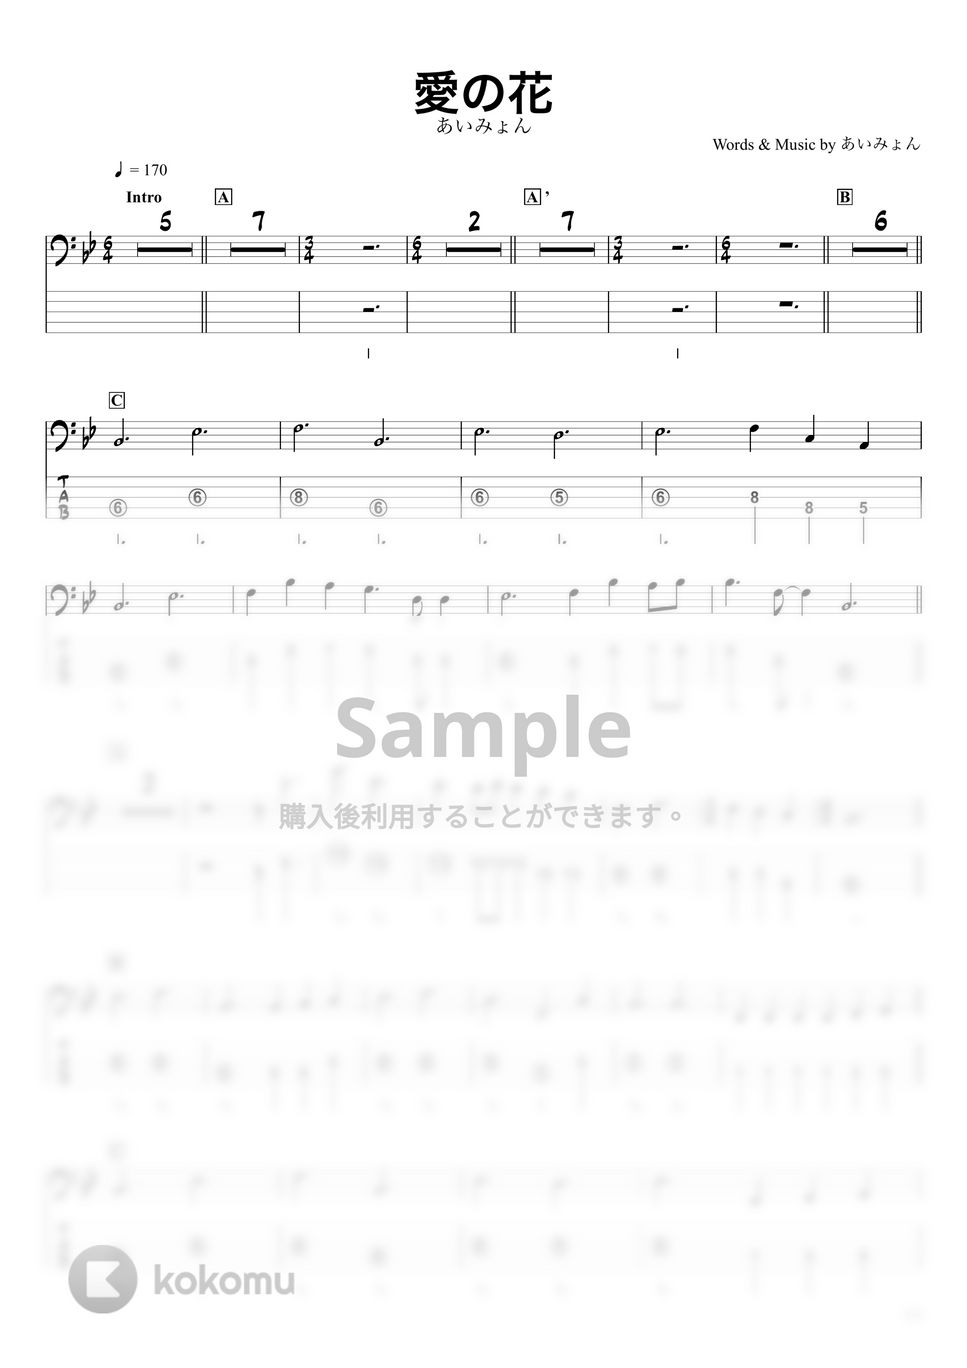 あいみょん - 愛の花 (ベースTAB譜☆5弦ベース対応) by swbass